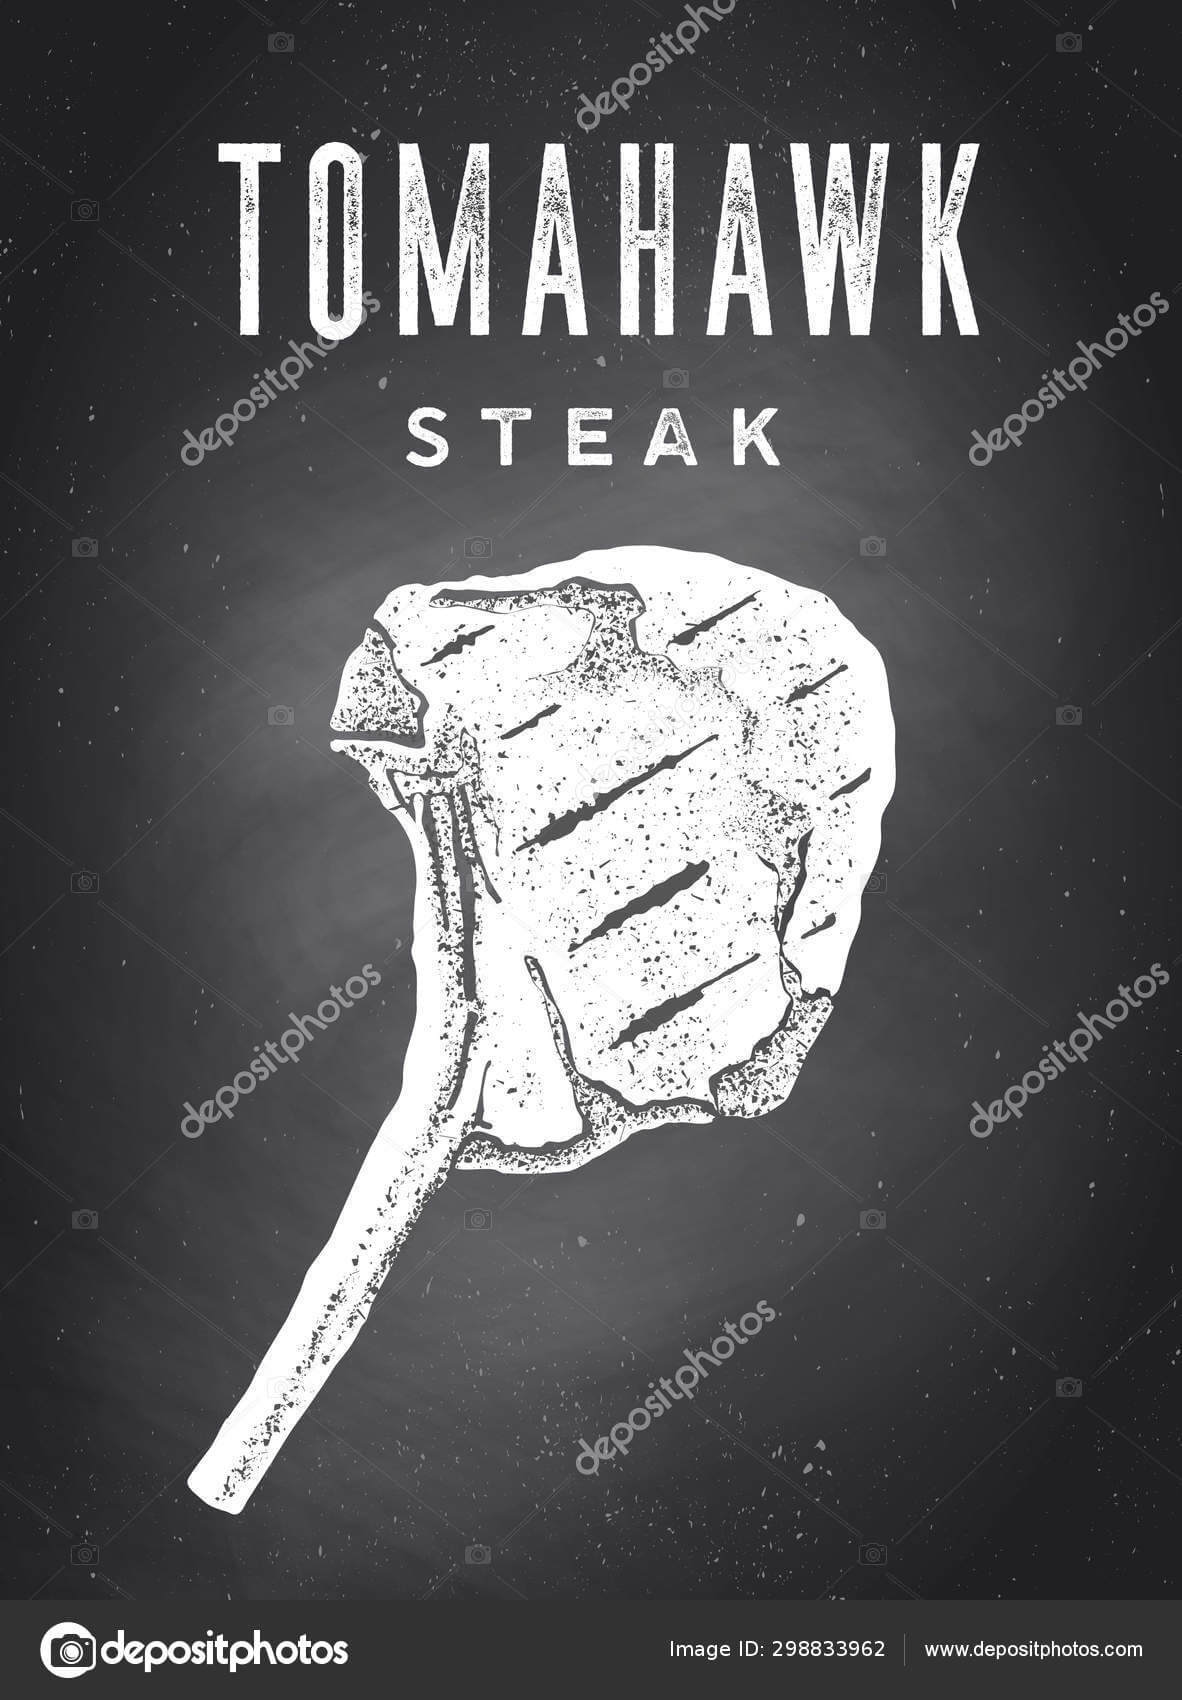 Steak Chalkboard Poster Steak Silhouette Text Tomahawk Steak Inside Chalkboard Poster Template